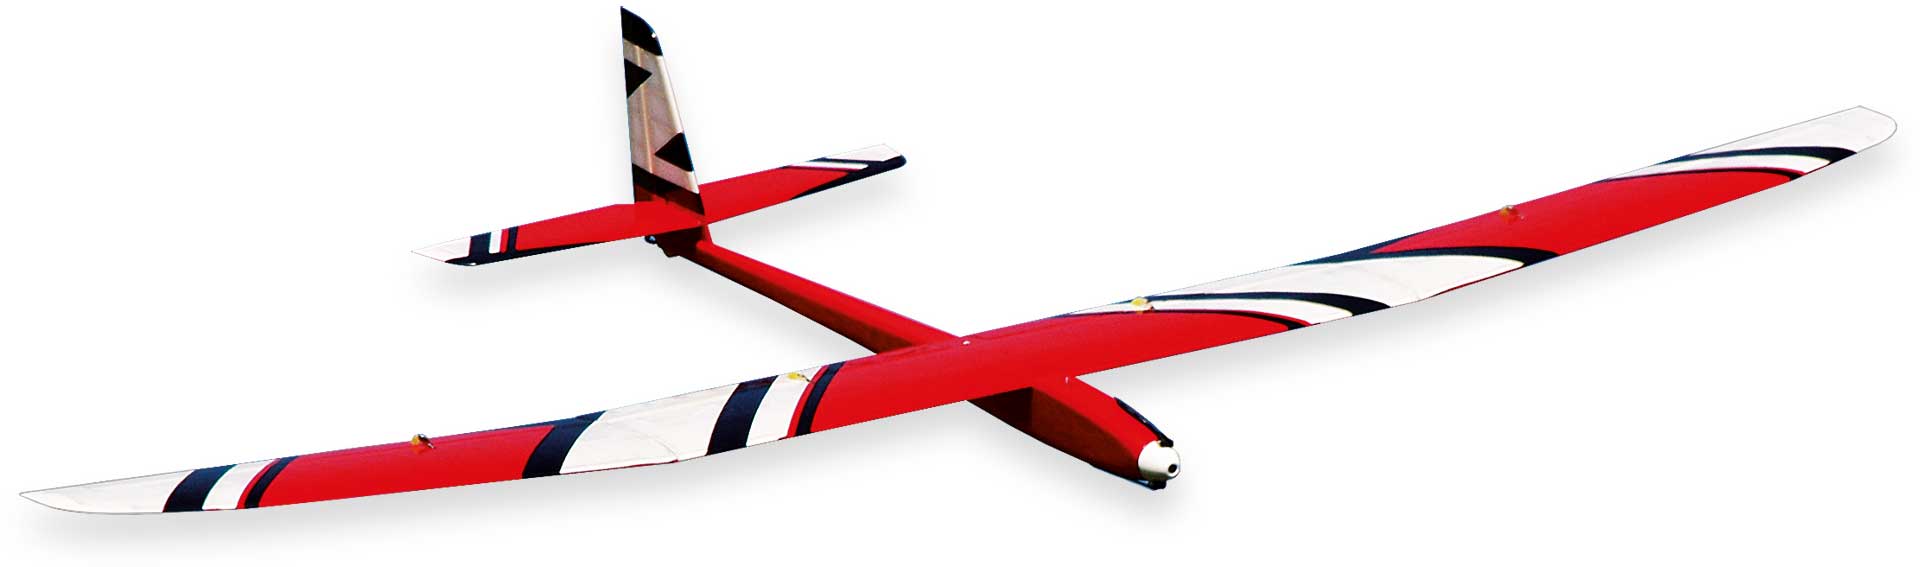 Robbe Modellsport Slider QE High Performance 4 volets Modèle d'avion électrique, kit contrepla